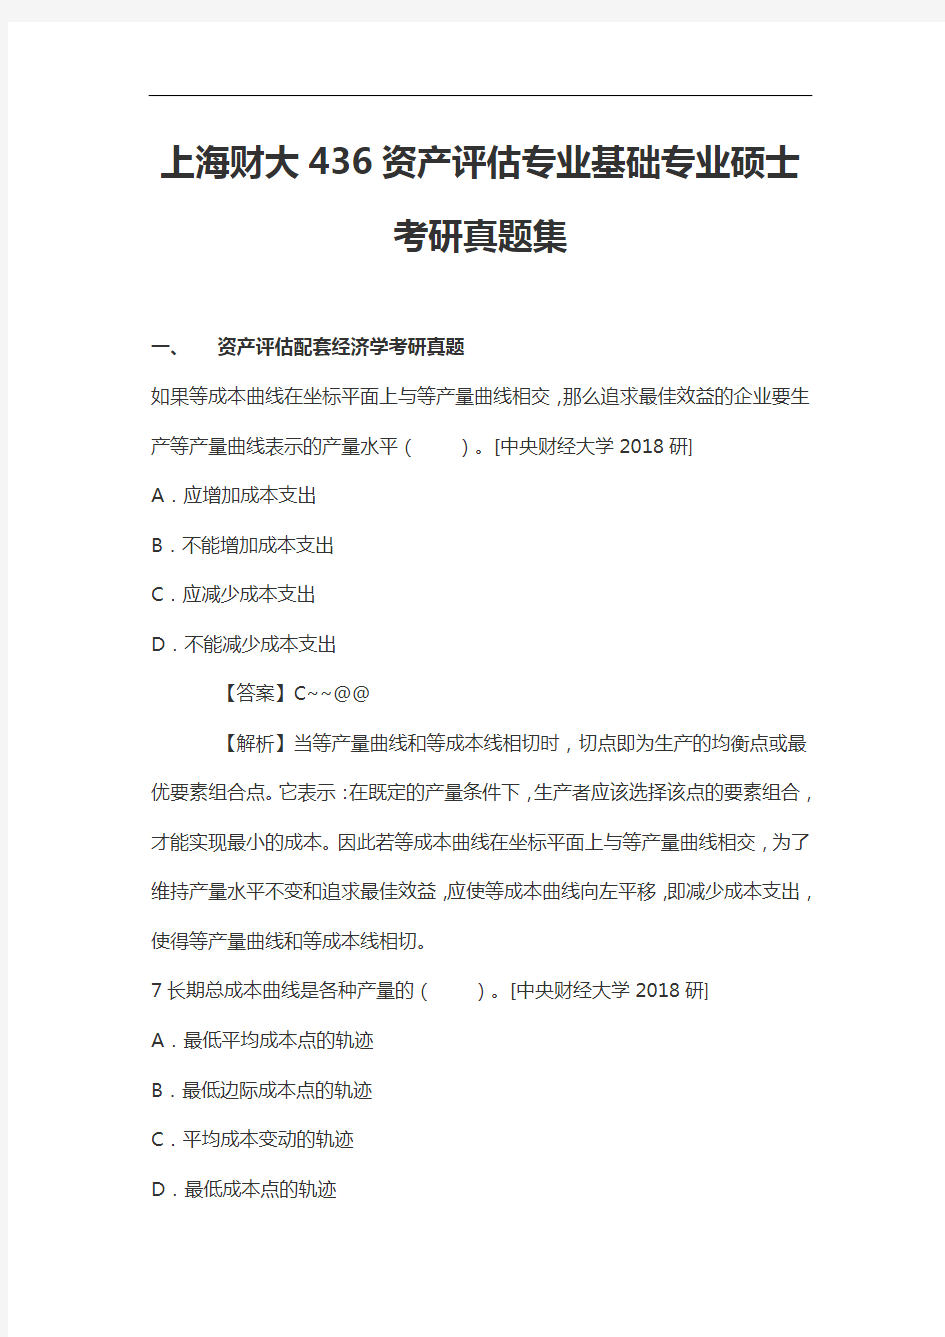 上海财大436资产评估专业基础专业硕士考研真题集